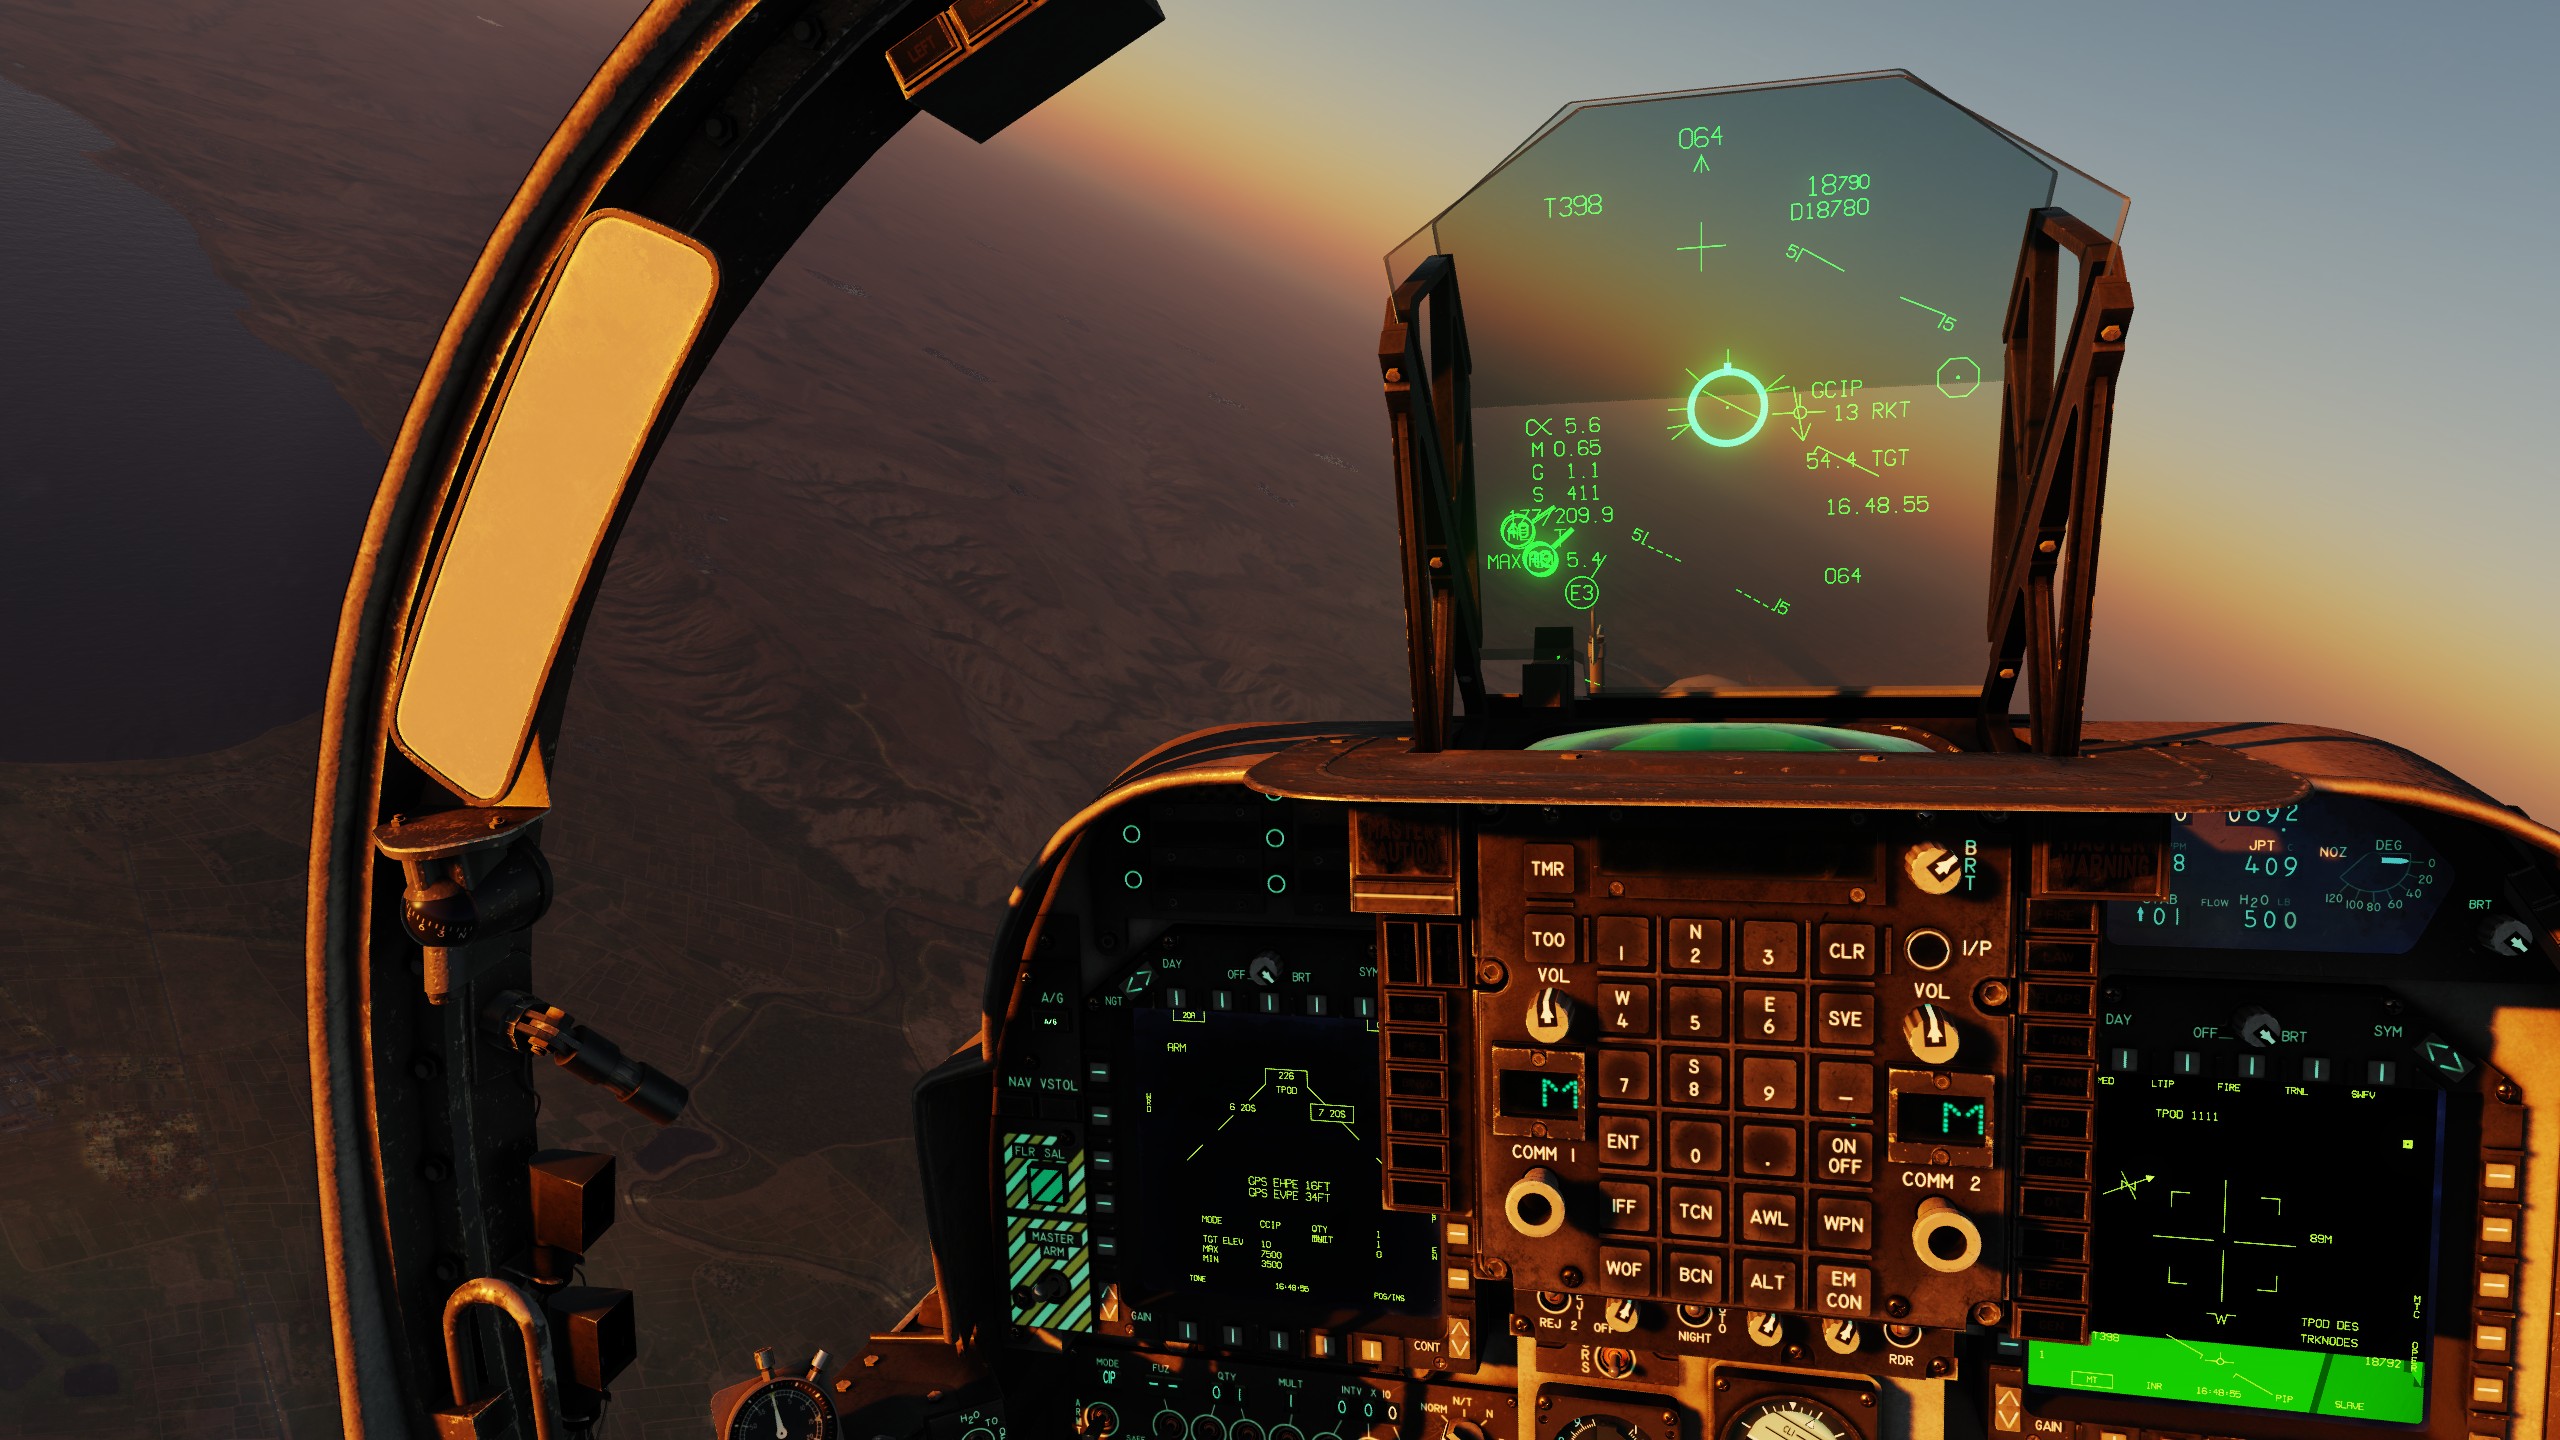 AV8B-NA Cockpit Displays - Readability at High Resolution - v3.0